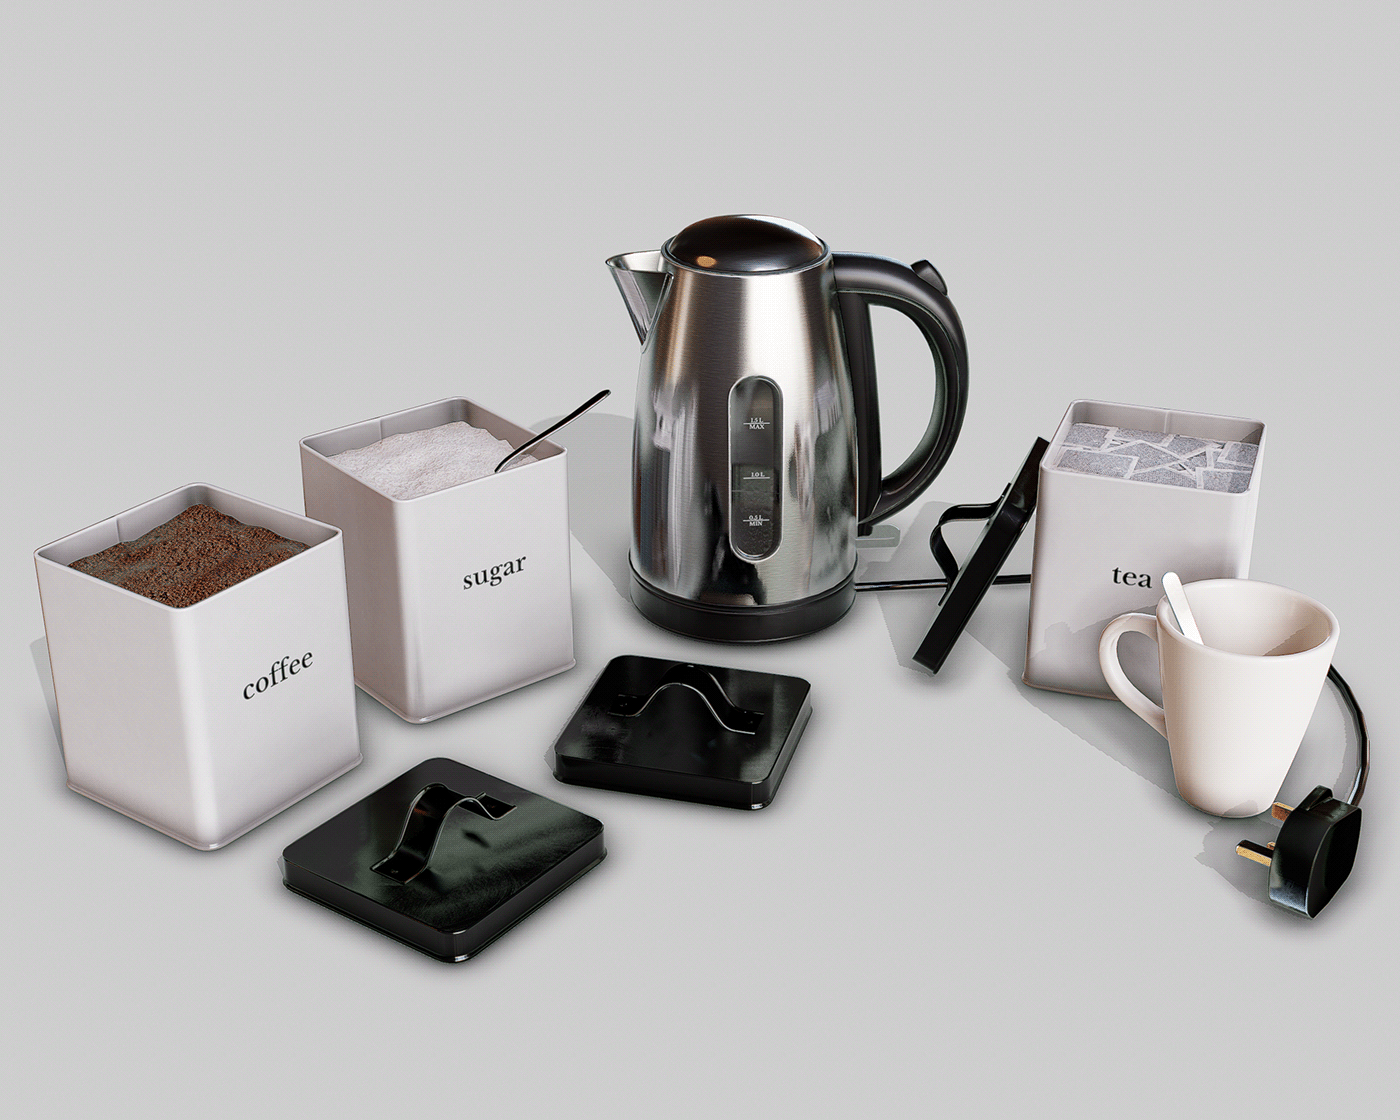 Coffee kettle product realtime sugar tea teaspoon